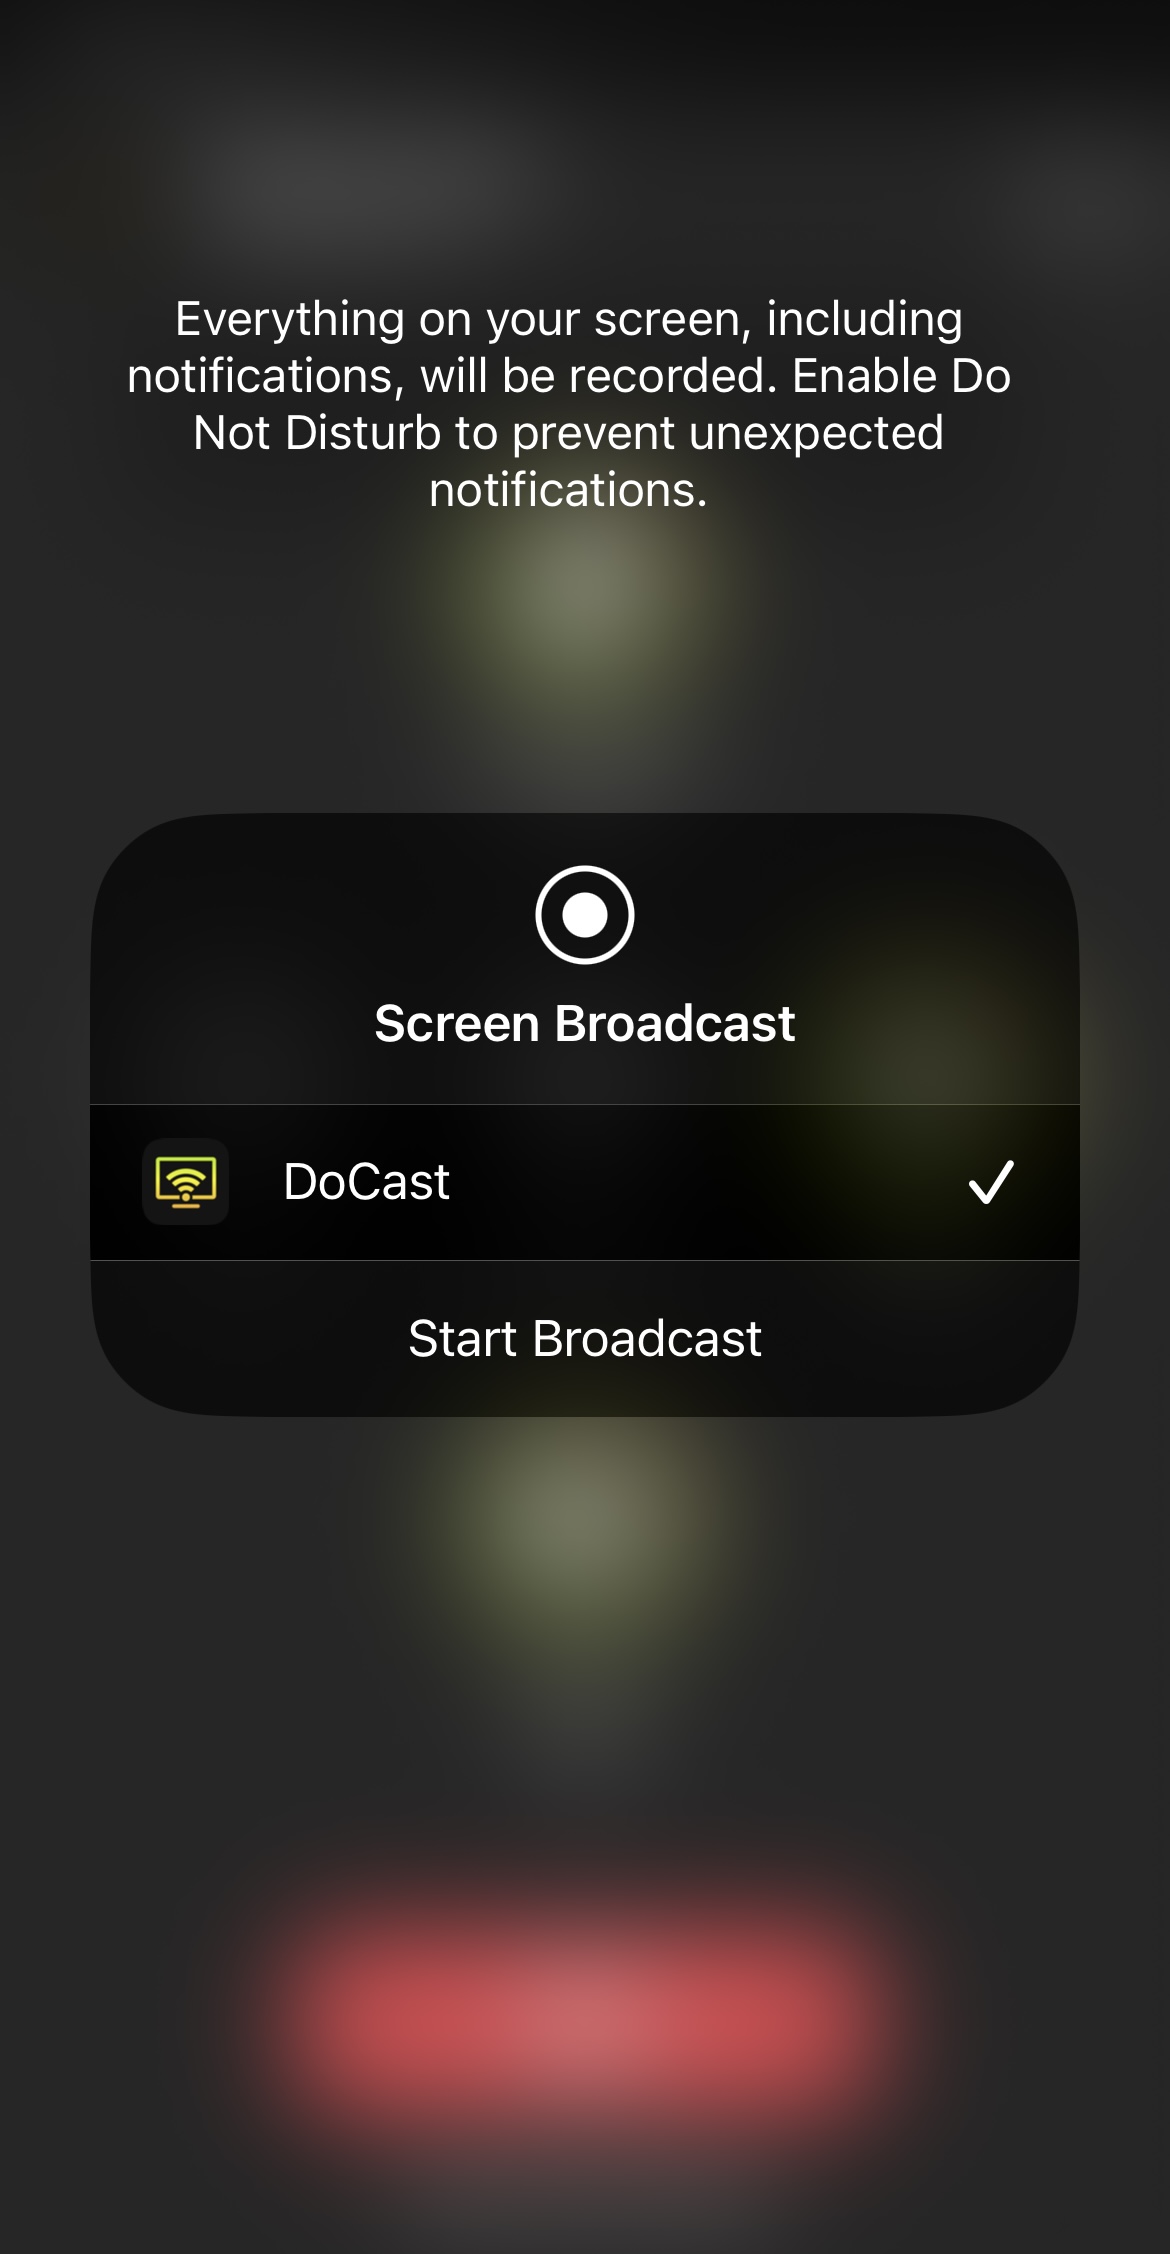 Screen broadcasting through DoCast app